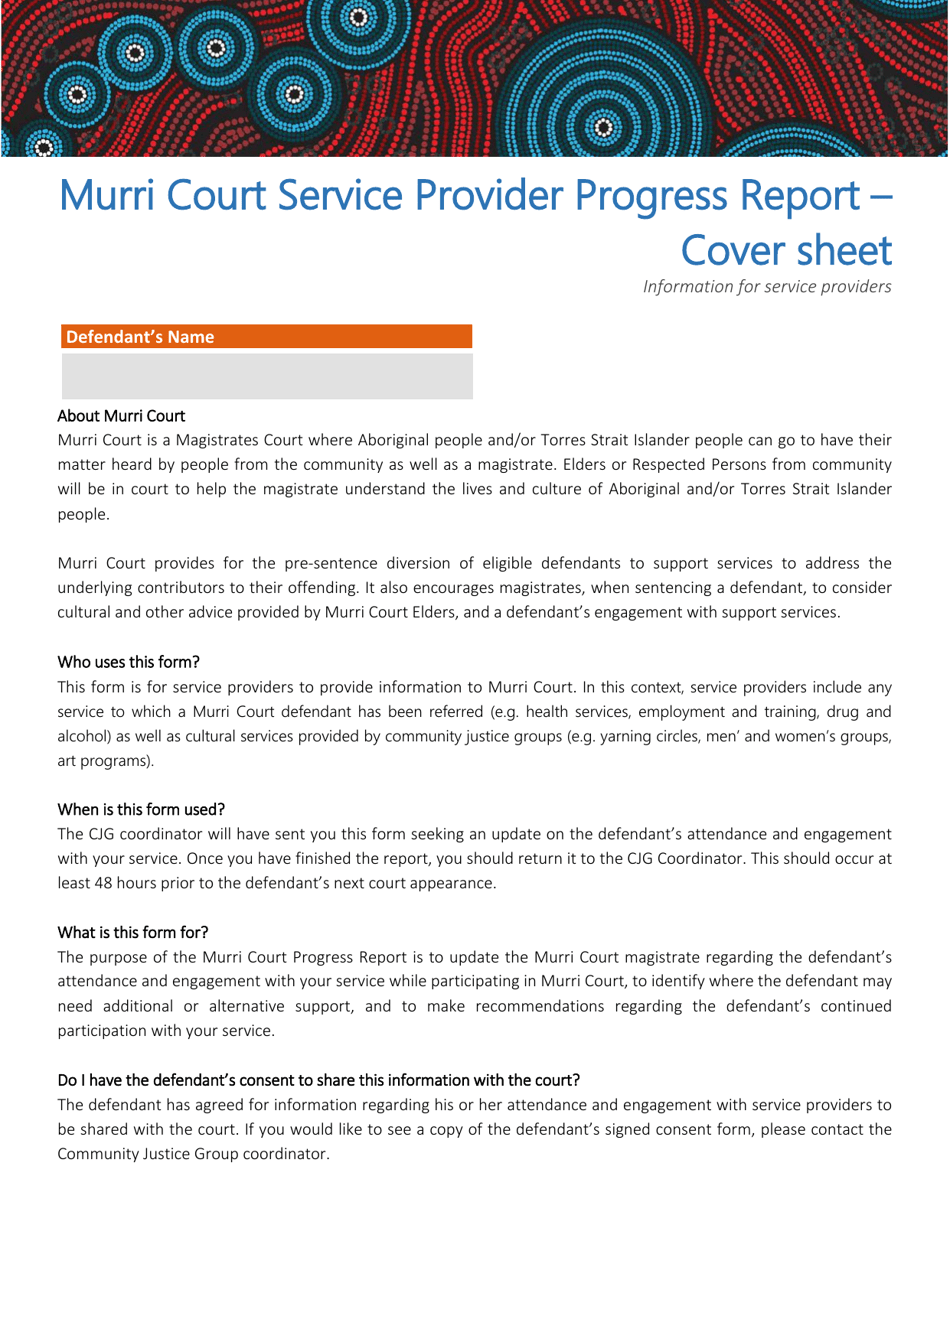 Murri Court Service Provider Progress Report - Queensland, Australia, Page 1